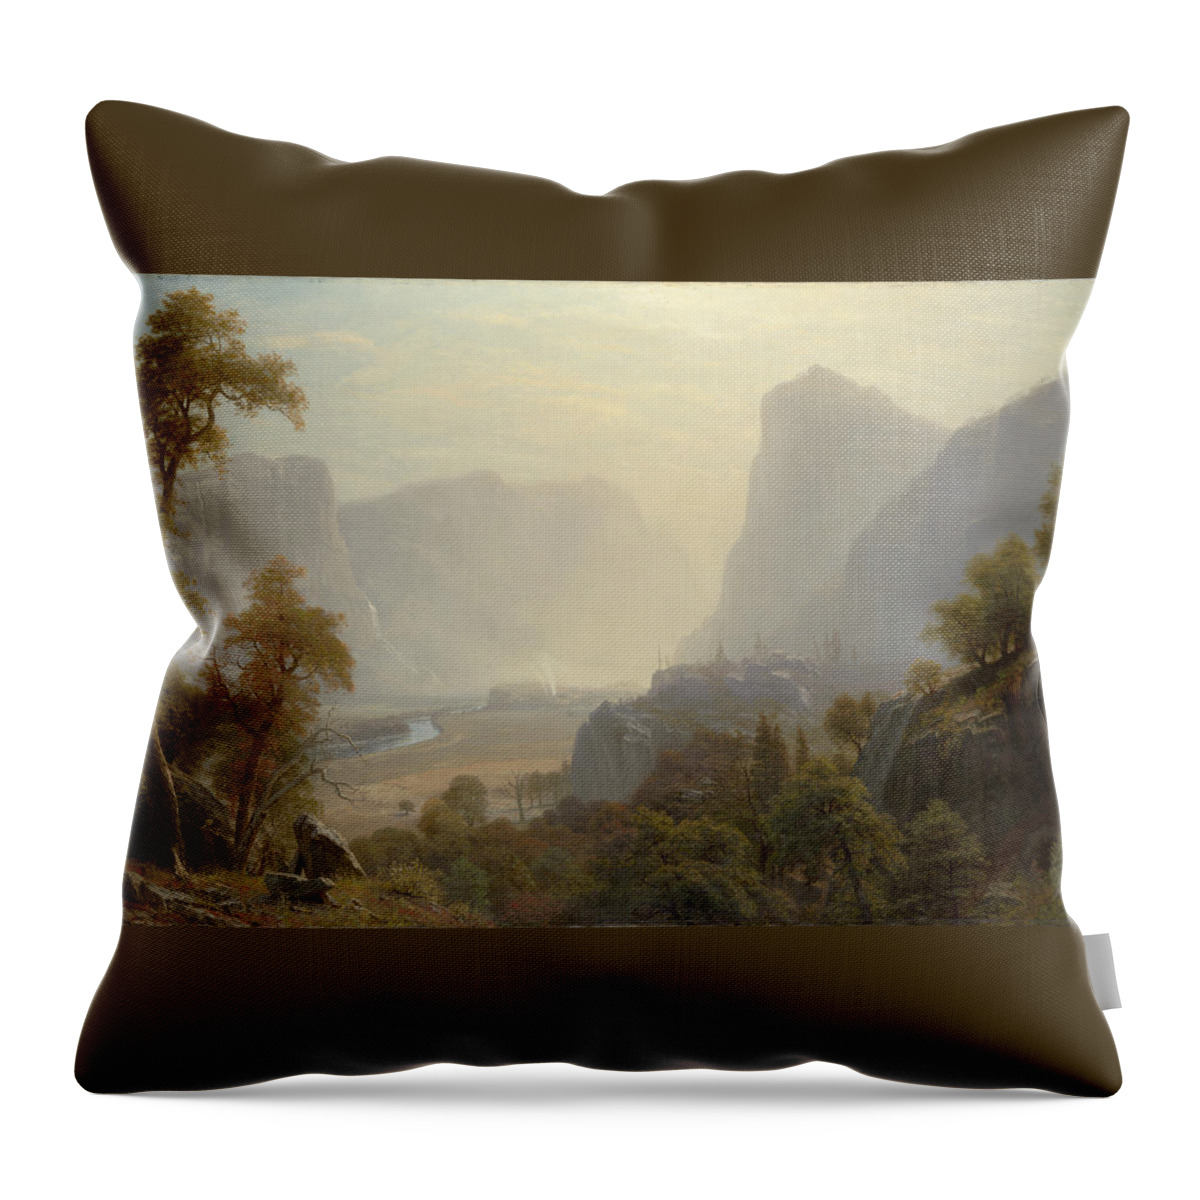 Albert Bierstadt Throw Pillow featuring the painting The Hetch Hetchy Valley #3 by Albert Bierstadt